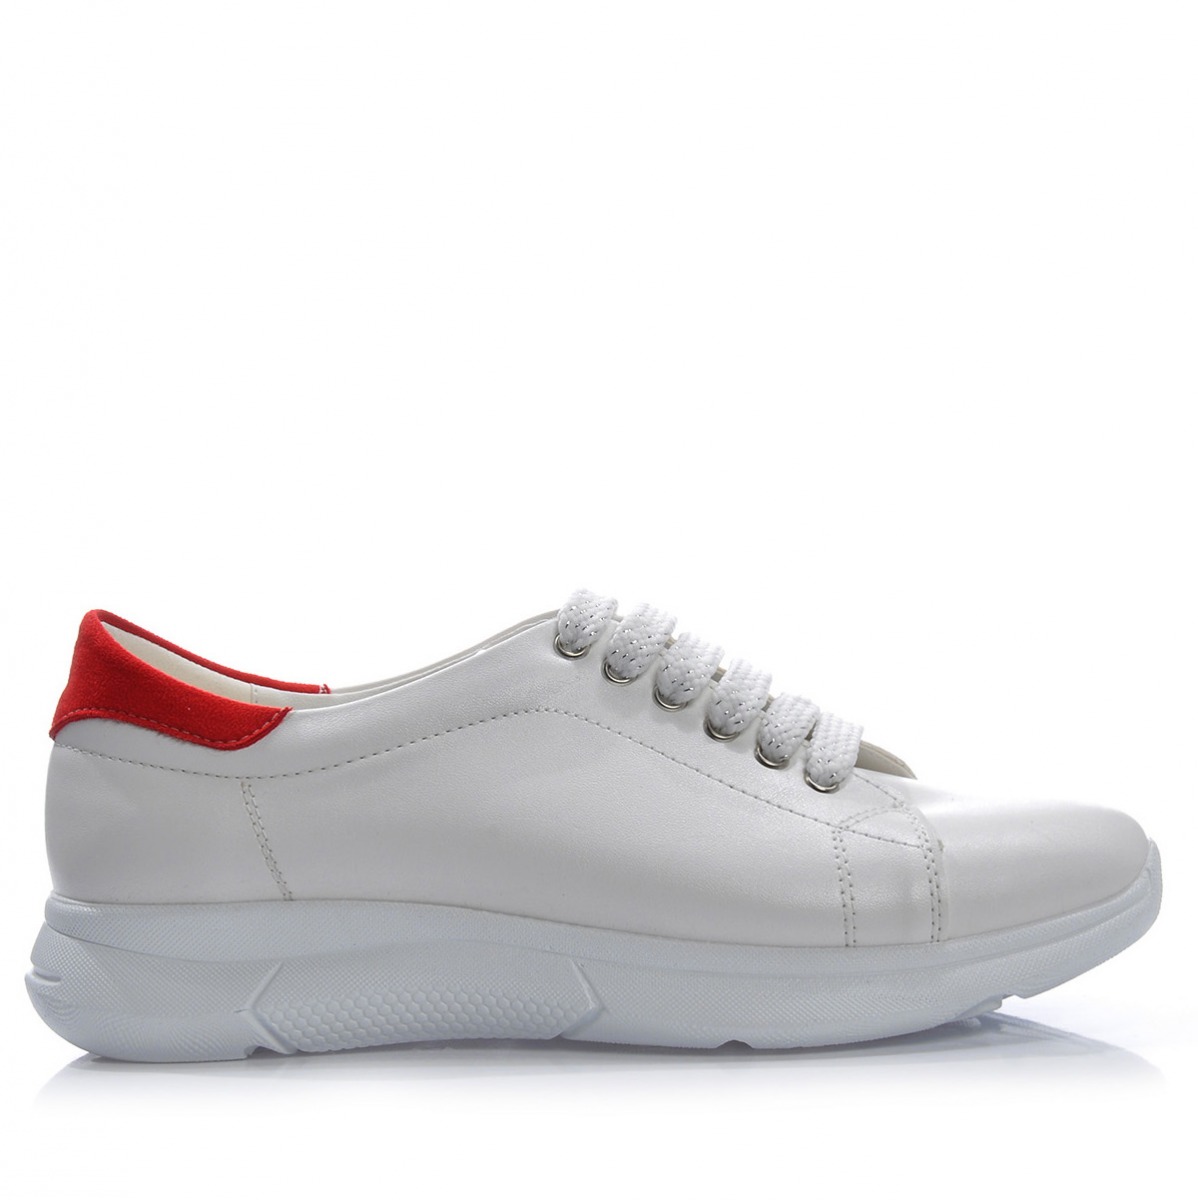 Flo Kadın  Beyaz- Kırmızı Spor Ayakkabı VZN-315Y. 3